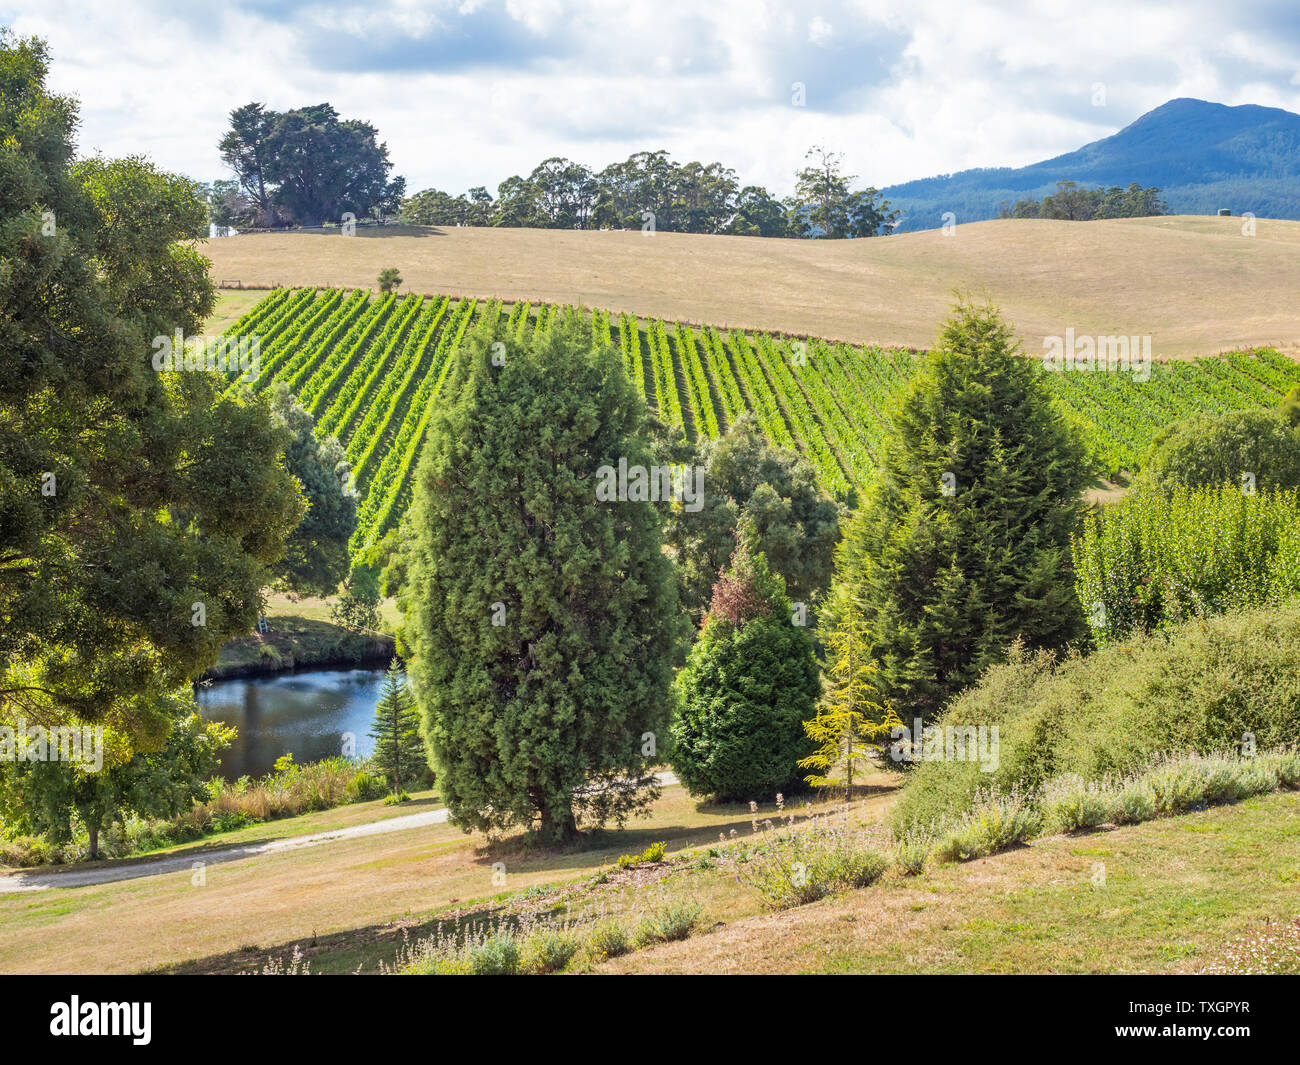 La Tasmanie, Australie - mars 6, 2019 : l'Église Vineyard de Pise, près de la ville de Lilydale en Tasmanie, Australie. Banque D'Images